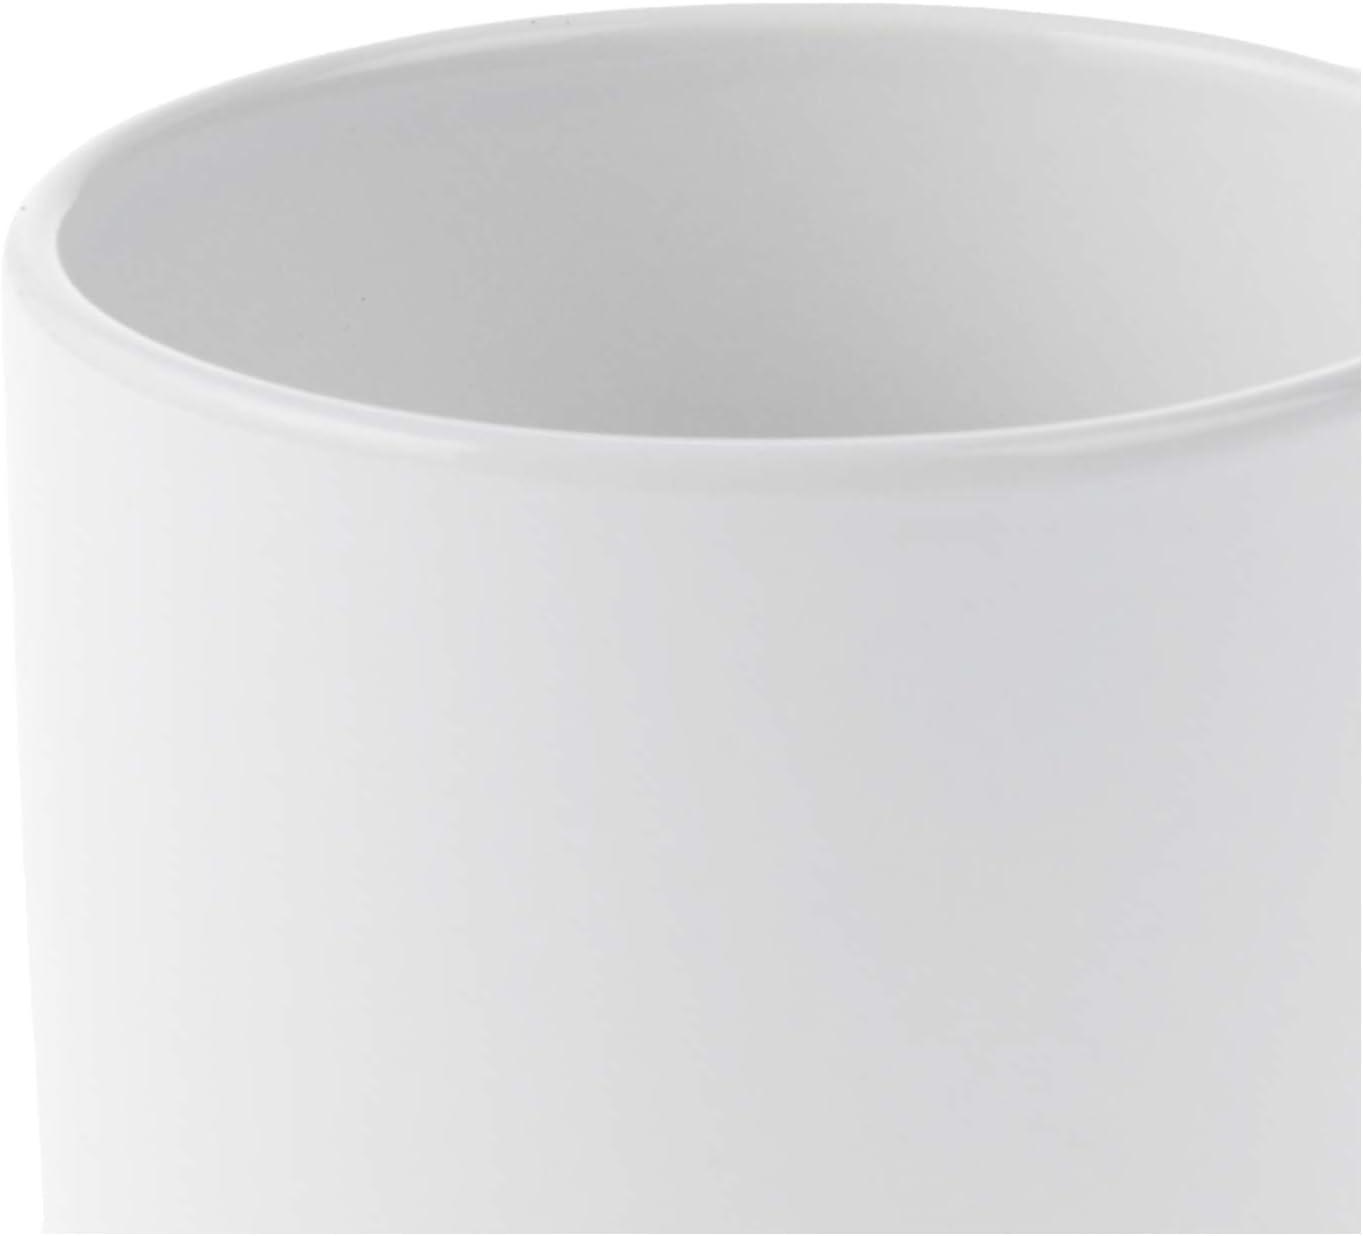 Cricut Beveled Blank Mug, Ceramic-Coated, Dishwasher & Microwave Safe to  Decorate, Mug Press & Infus…See more Cricut Beveled Blank Mug